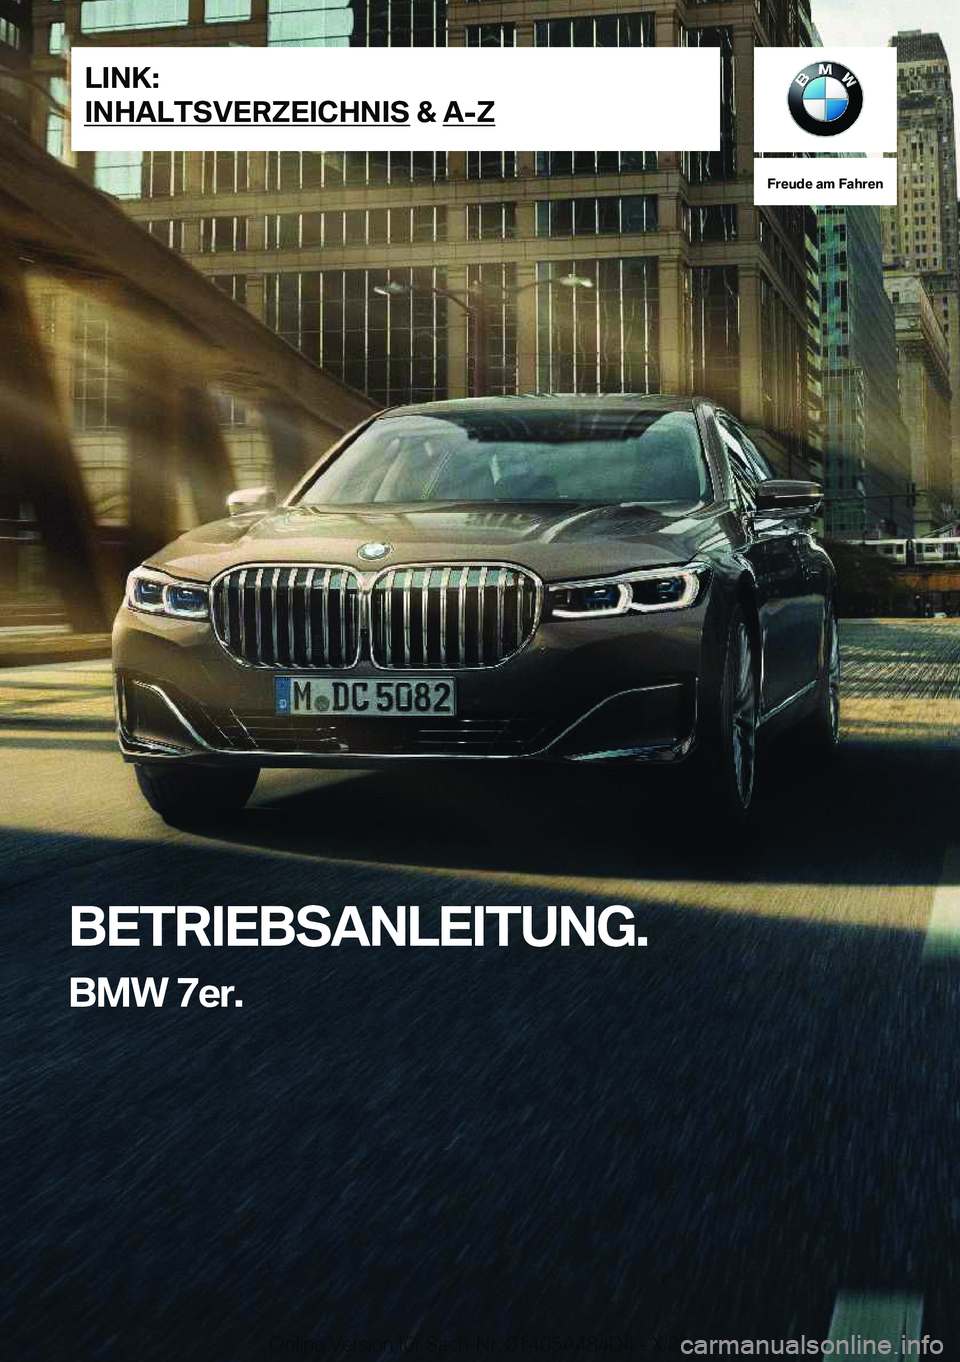 BMW 7 SERIES 2022  Betriebsanleitungen (in German) �F�r�e�u�d�e��a�m��F�a�h�r�e�n
�B�E�T�R�I�E�B�S�A�N�L�E�I�T�U�N�G�.�B�M�W��7�e�r�.�L�I�N�K�:
�I�N�H�A�L�T�S�V�E�R�Z�E�I�C�H�N�I�S��&��A�-�Z�O�n�l�i�n�e��V�e�r�s�i�o�n��f�